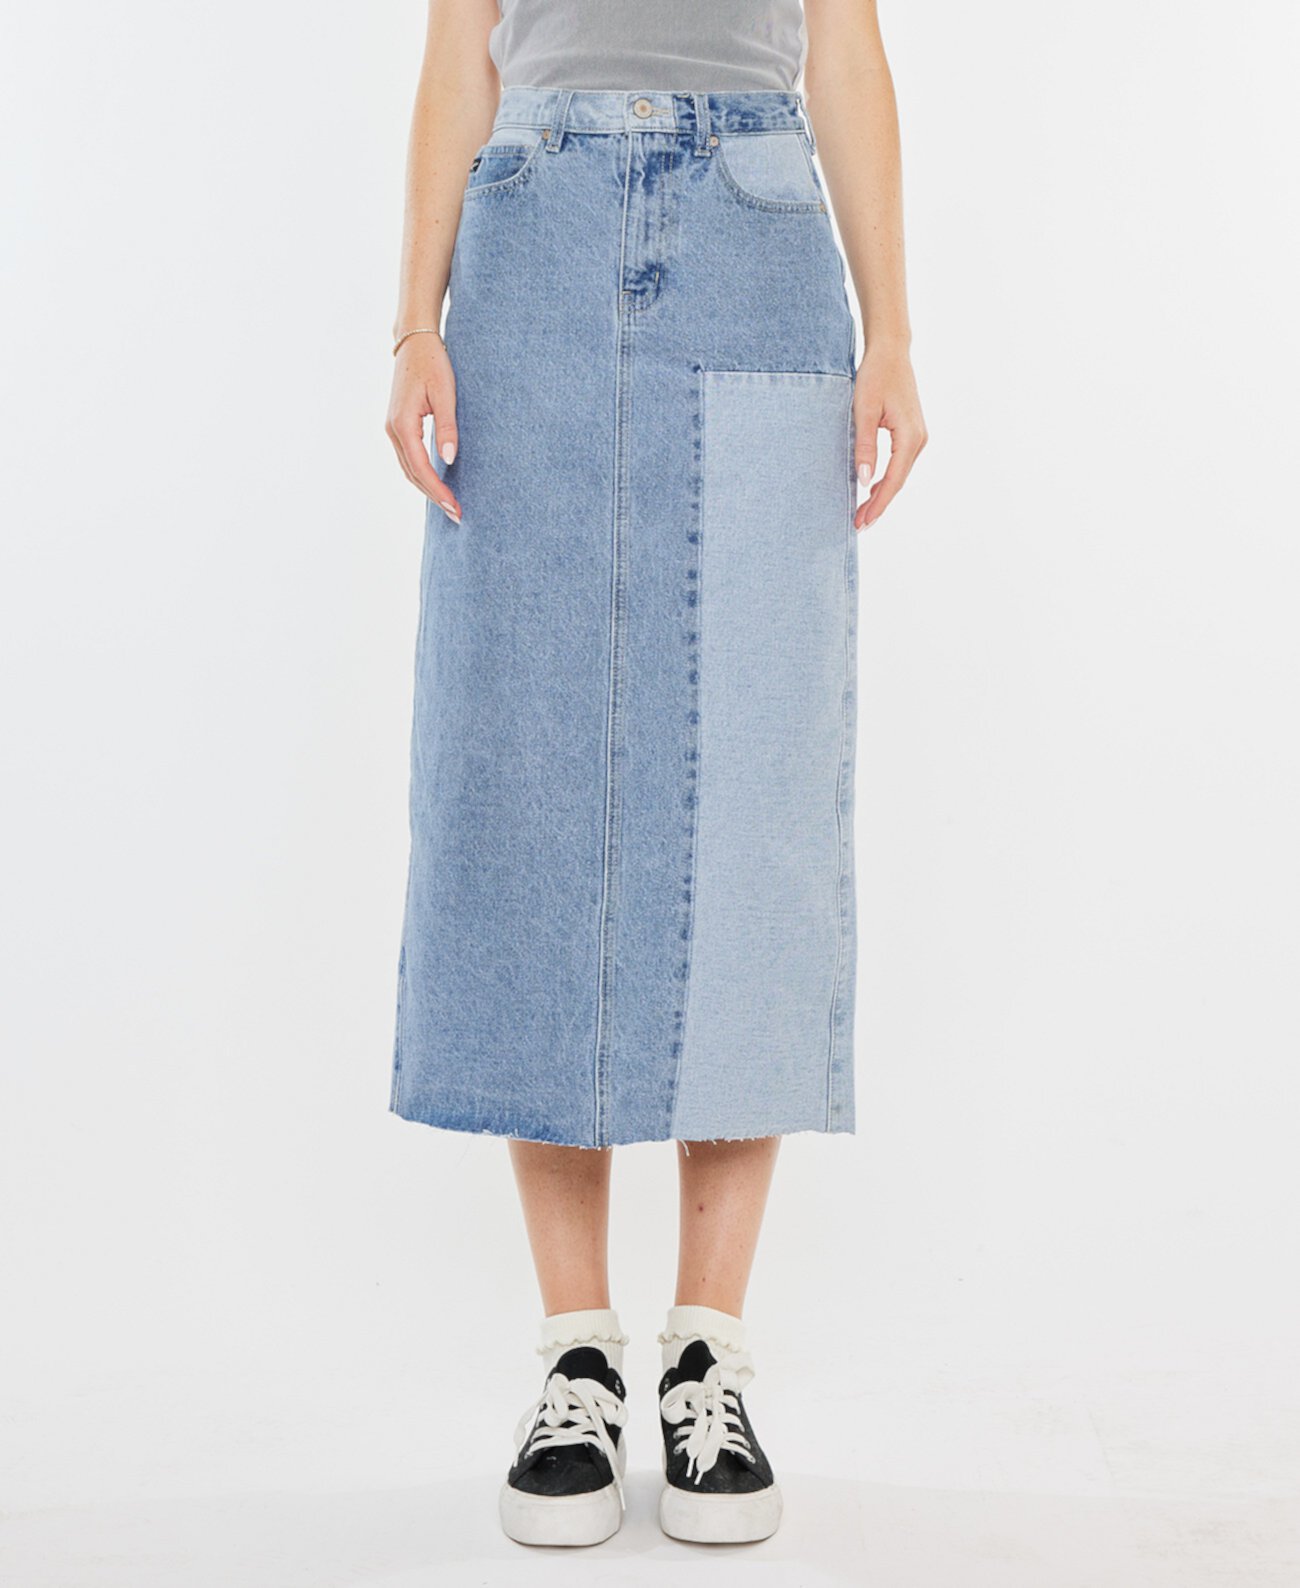 Женская двухцветная джинсовая юбка-миди с цветными блоками Kancan